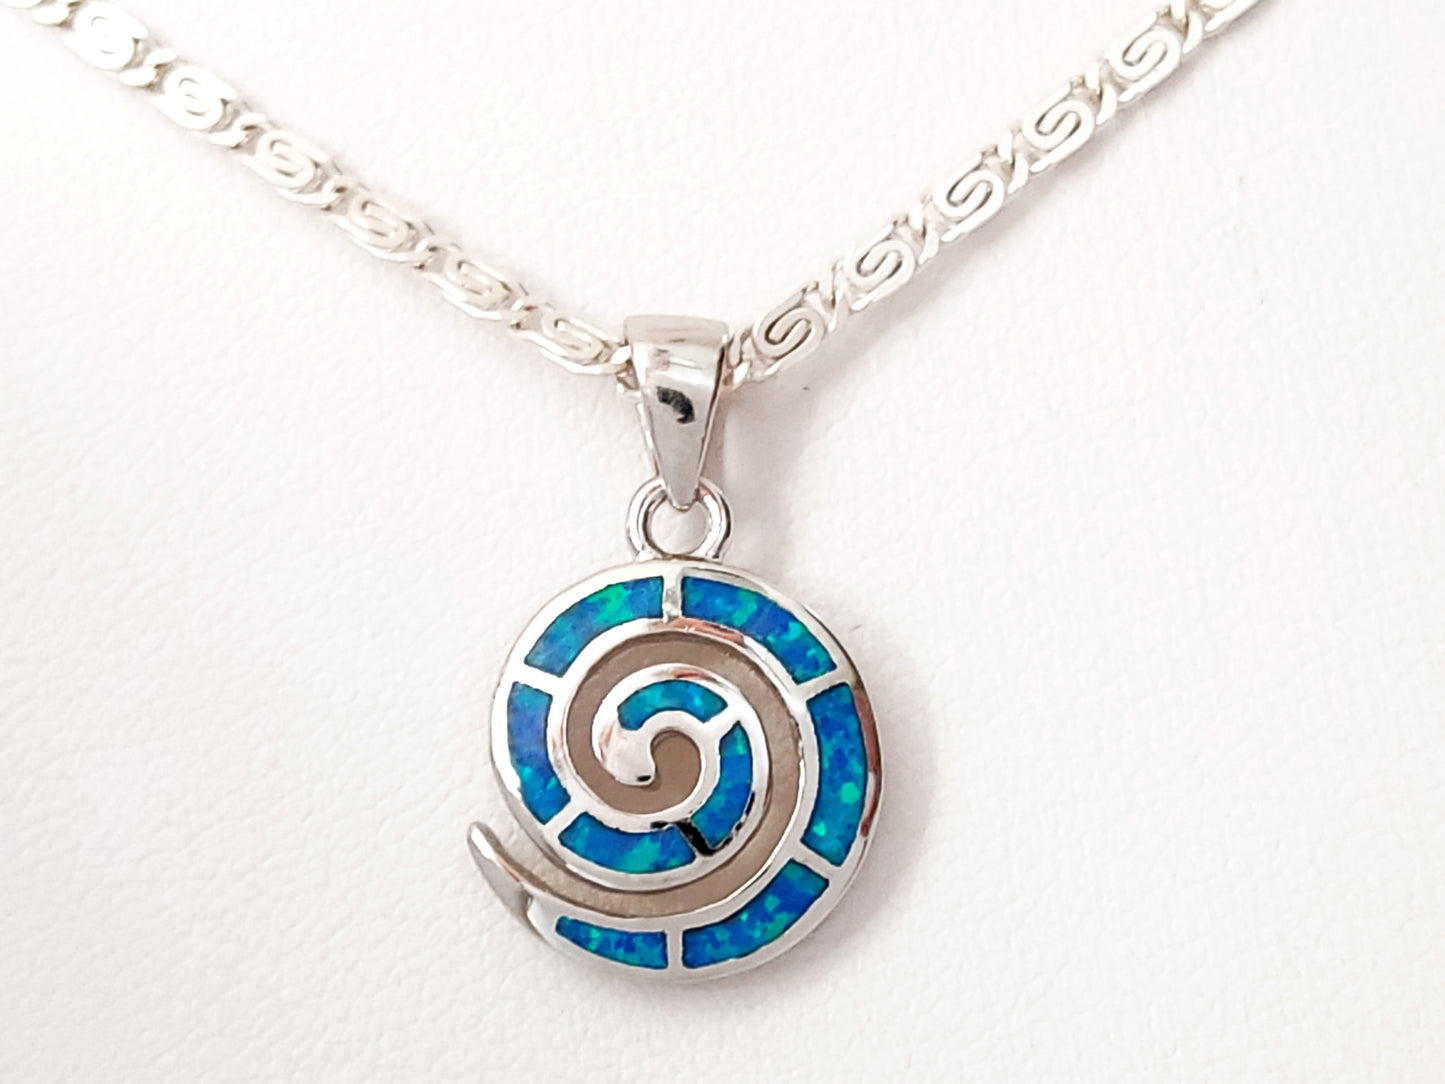 Collier avec pendentif en argent et chaîne d'opale bleue en spirale grecque, 15mm 